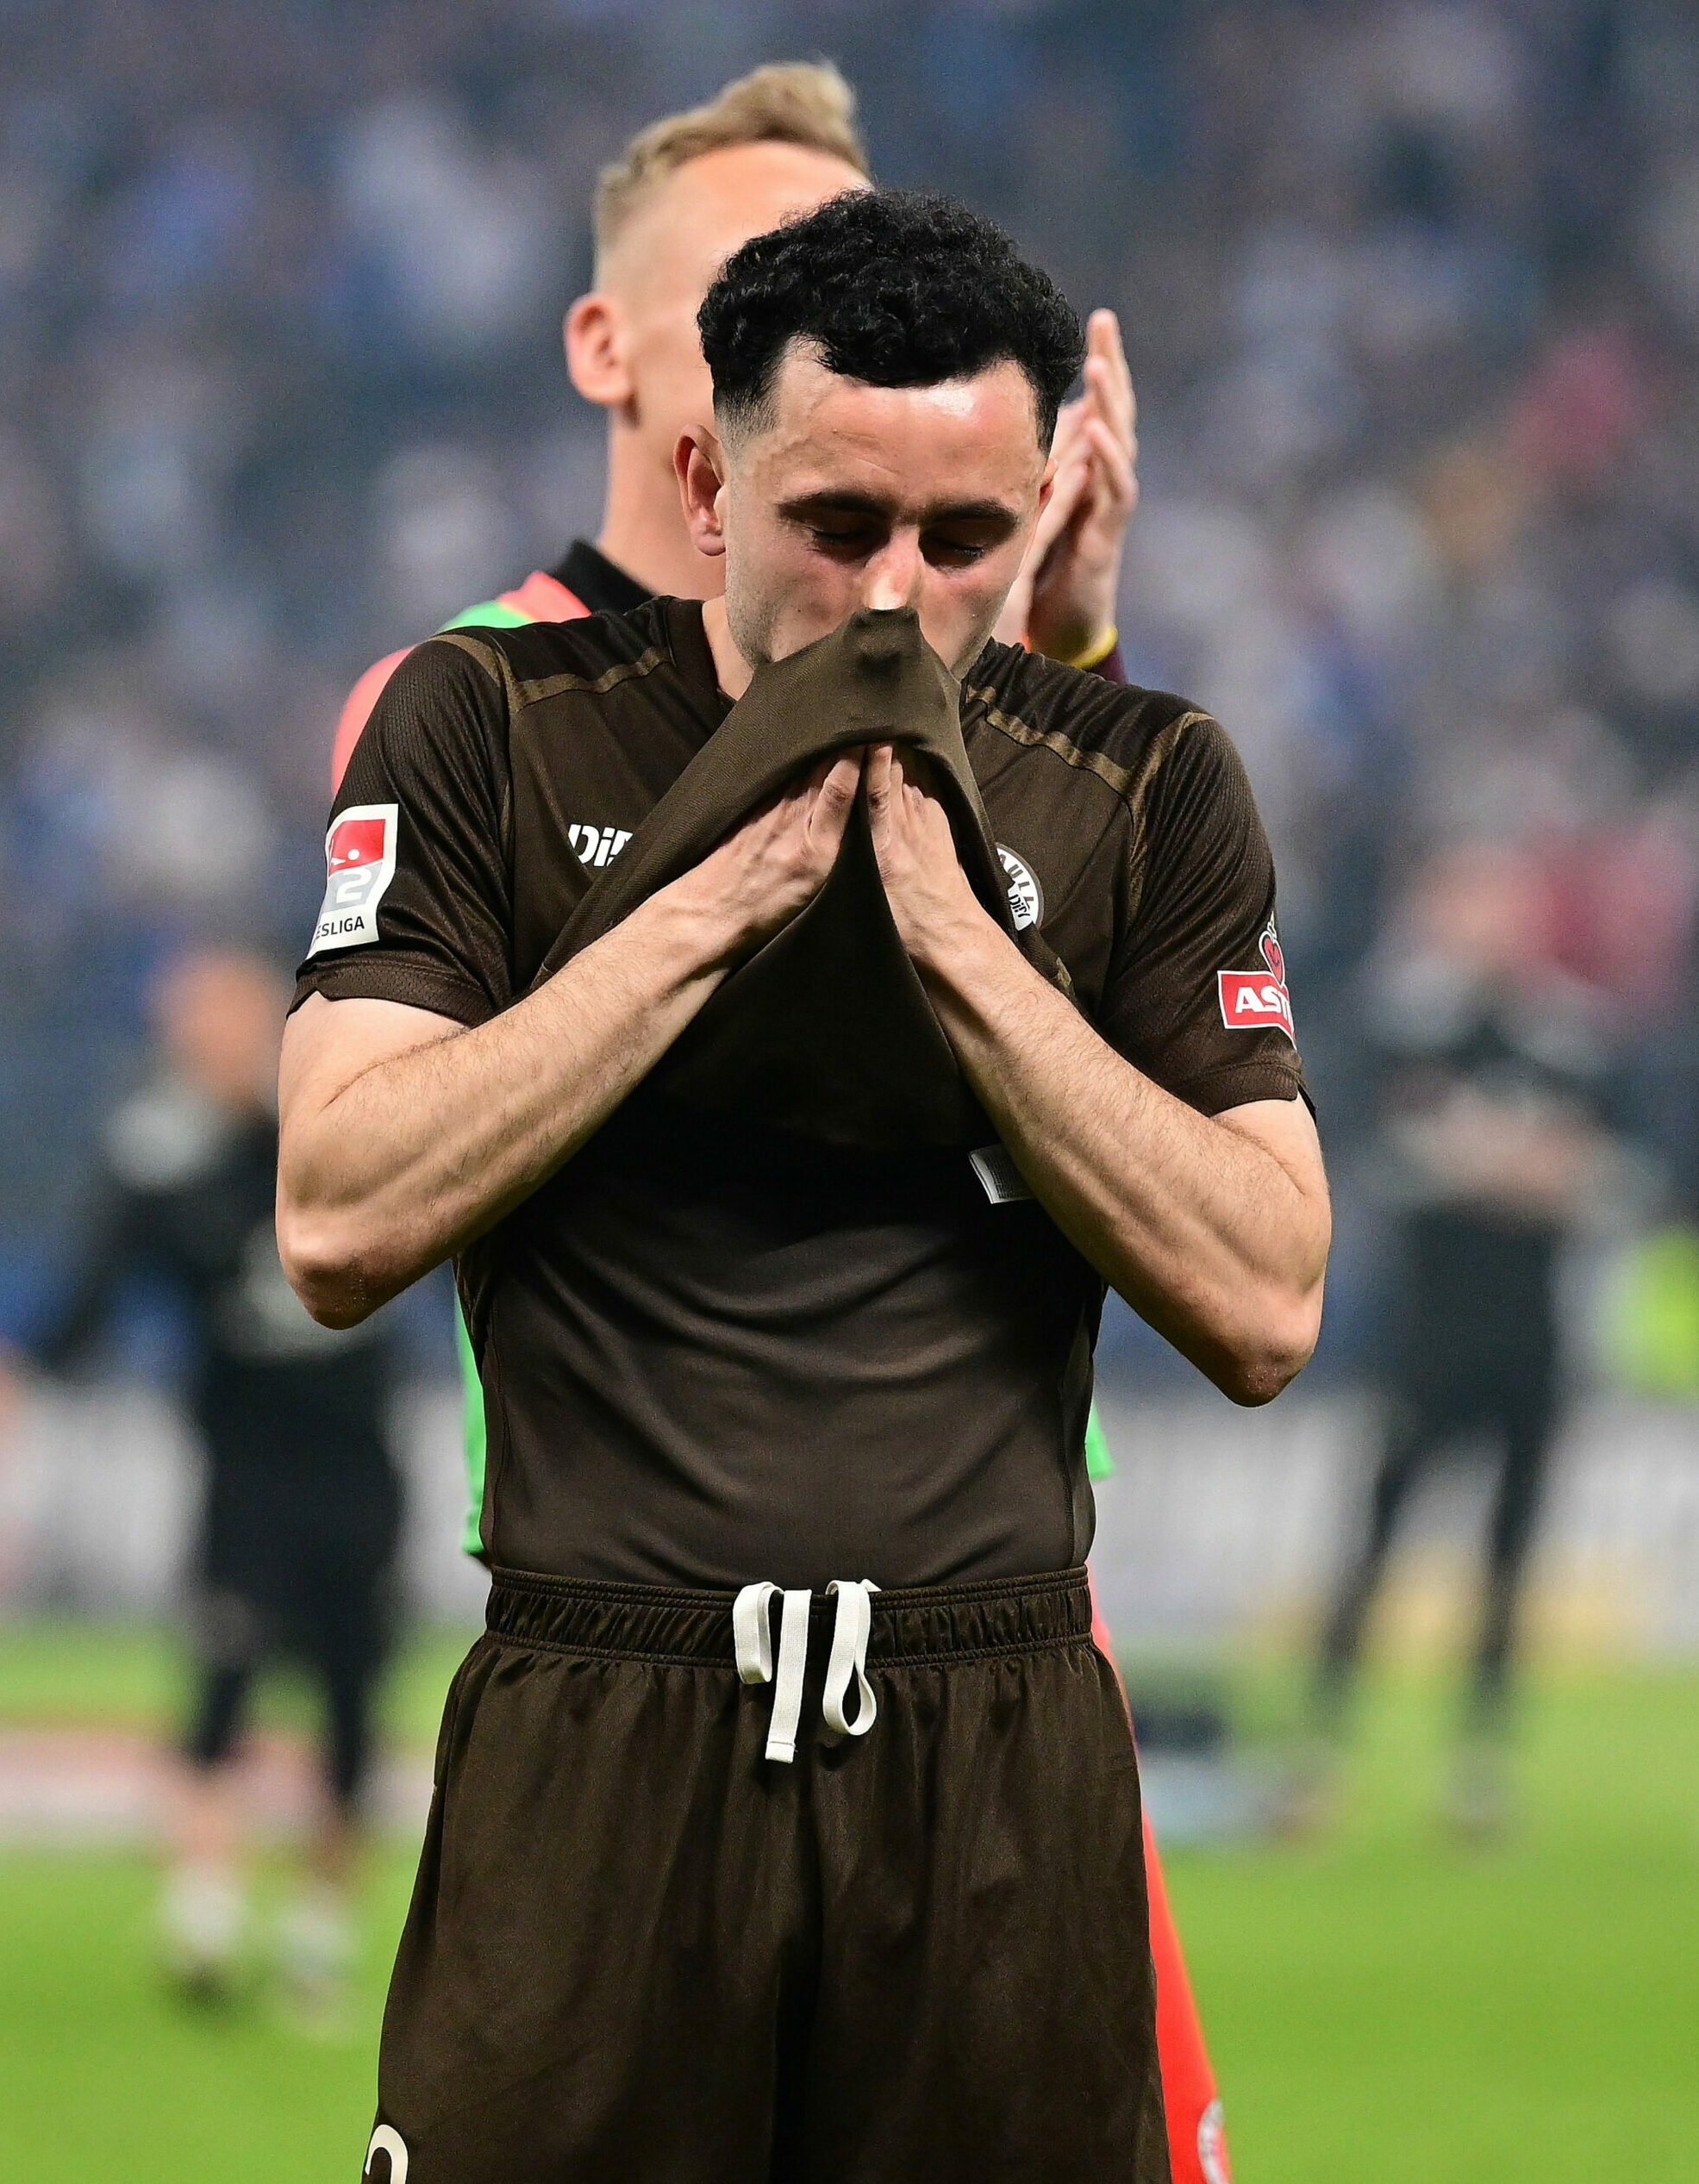 Manolis Saliakas vom FC St. Pauli ist nach der Niederlage gegen den HSV enttäuscht